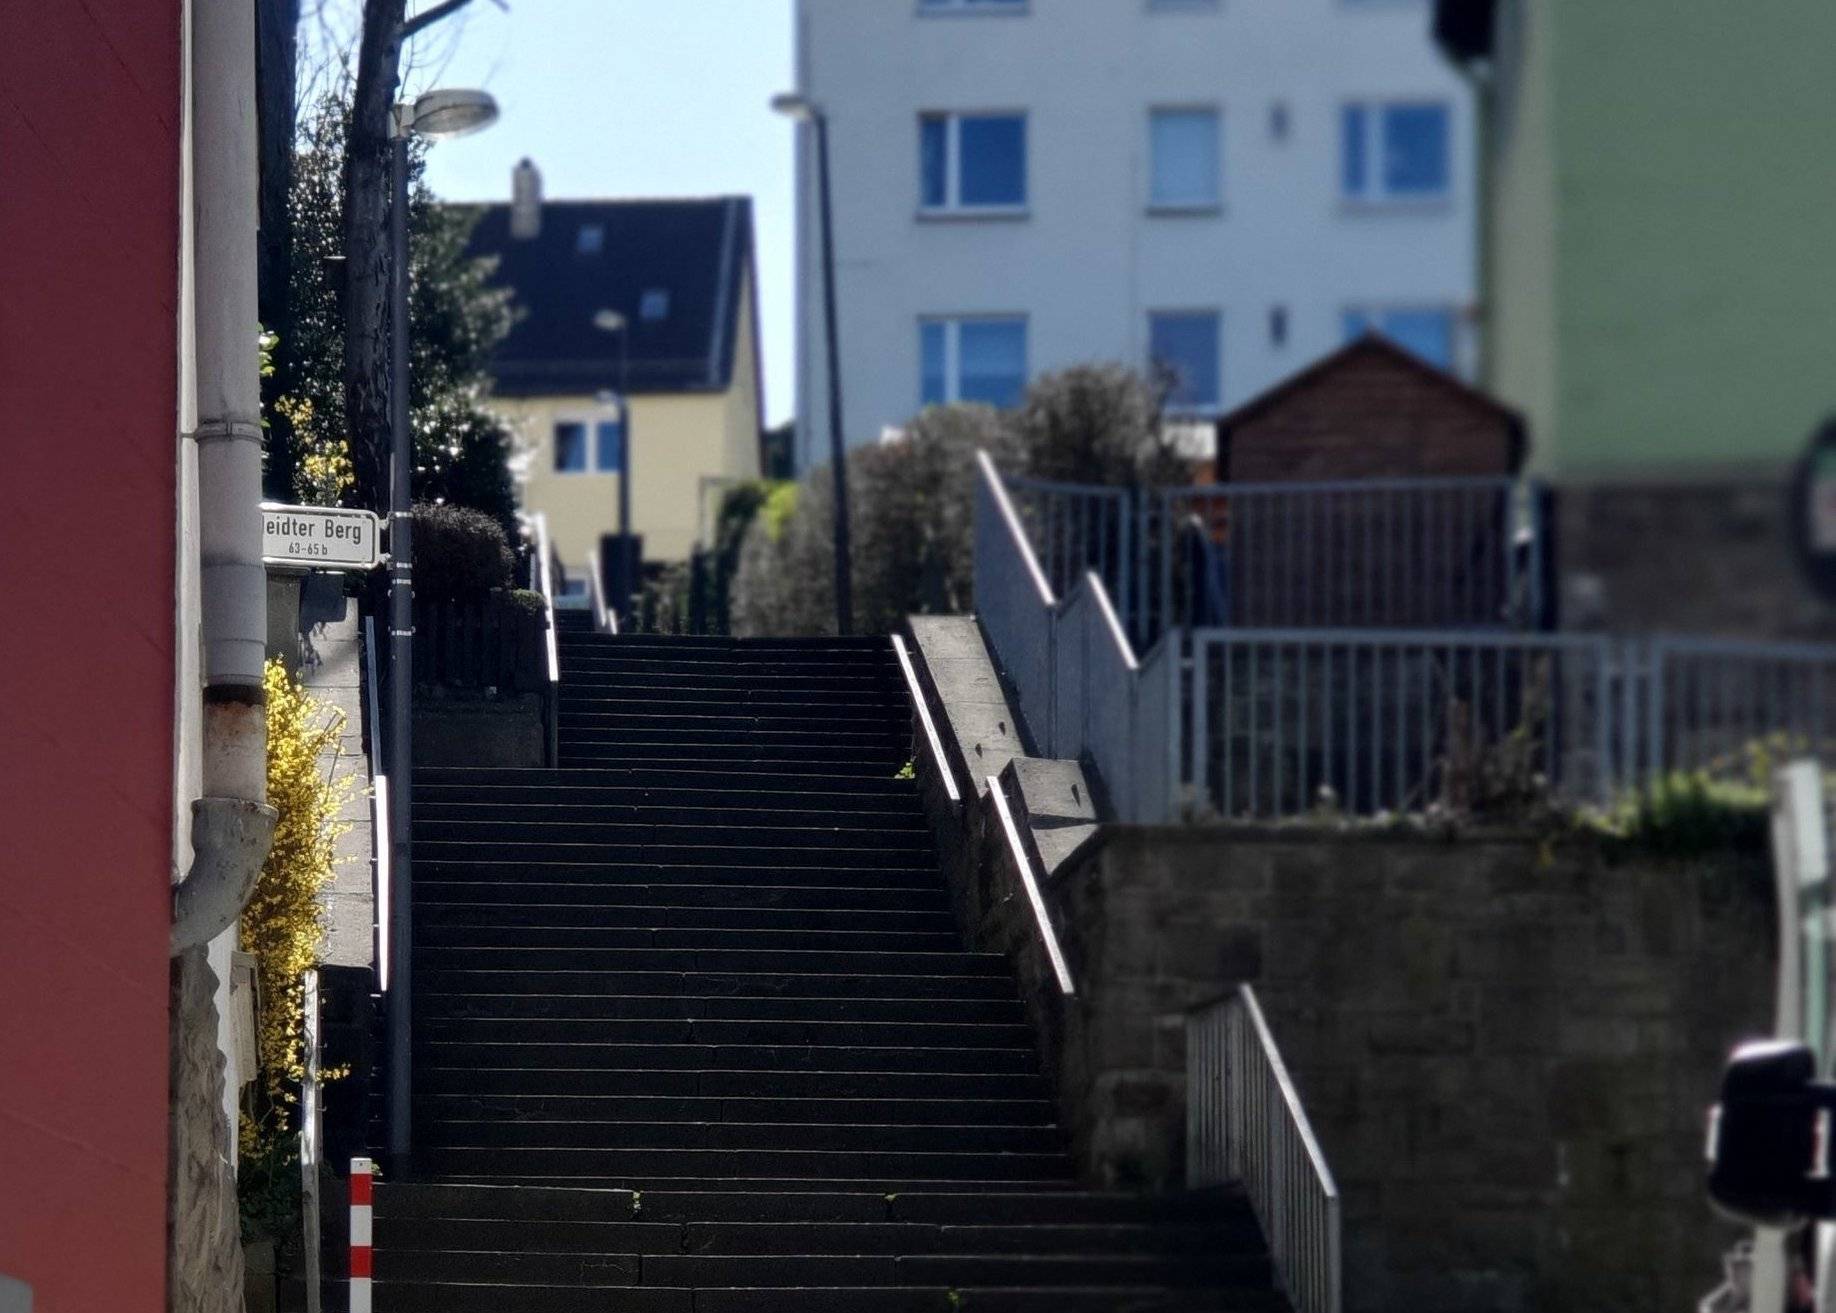  Die Treppe Heidter Berg wird saniert. 